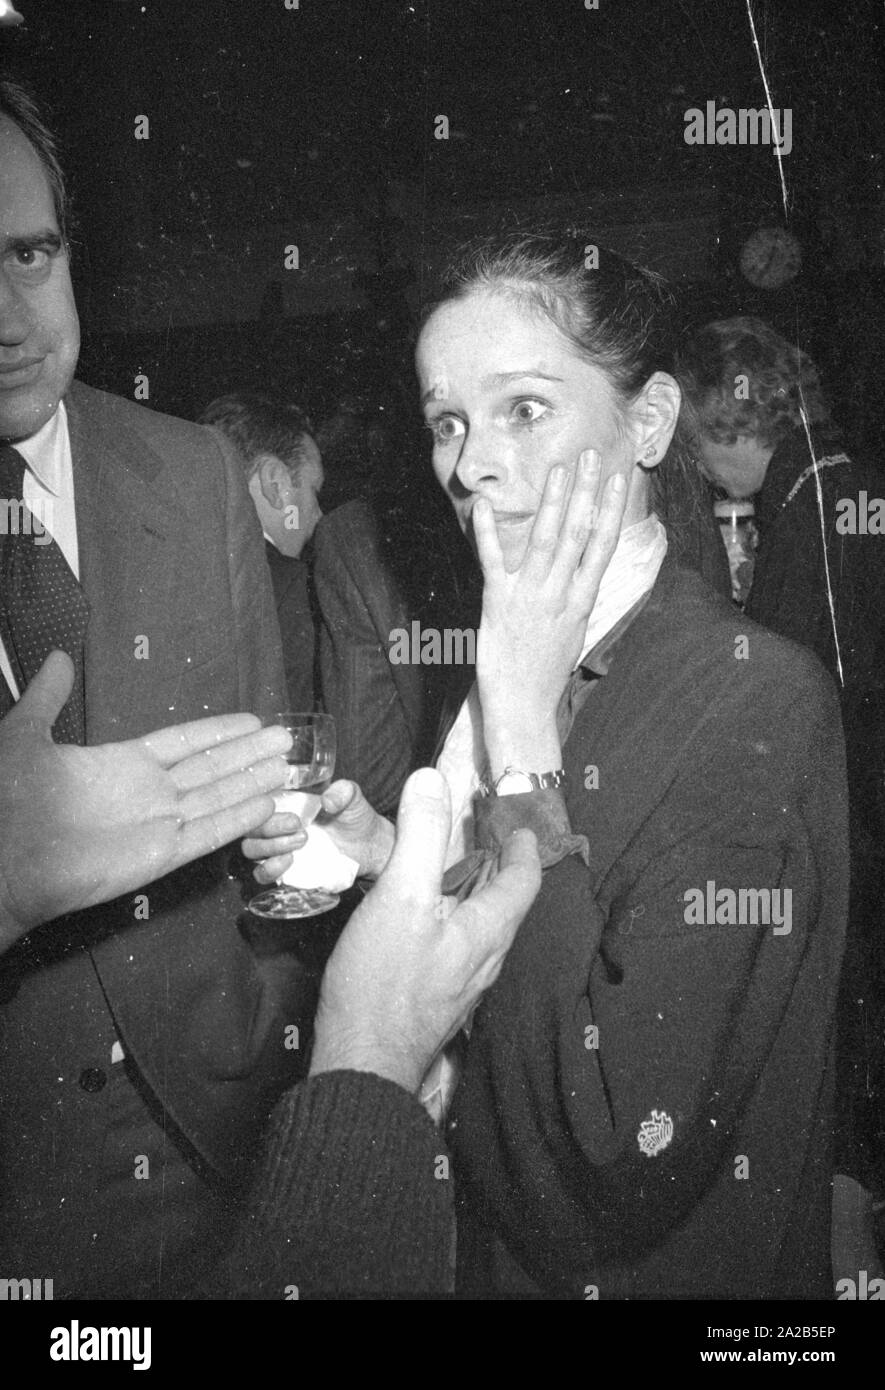 Das Bild zeigt die Schauspielerin Geraldine Chaplin am Festakt zur Gründung der Filmwoche München. Sie spricht mit anderen Gästen. Stockfoto